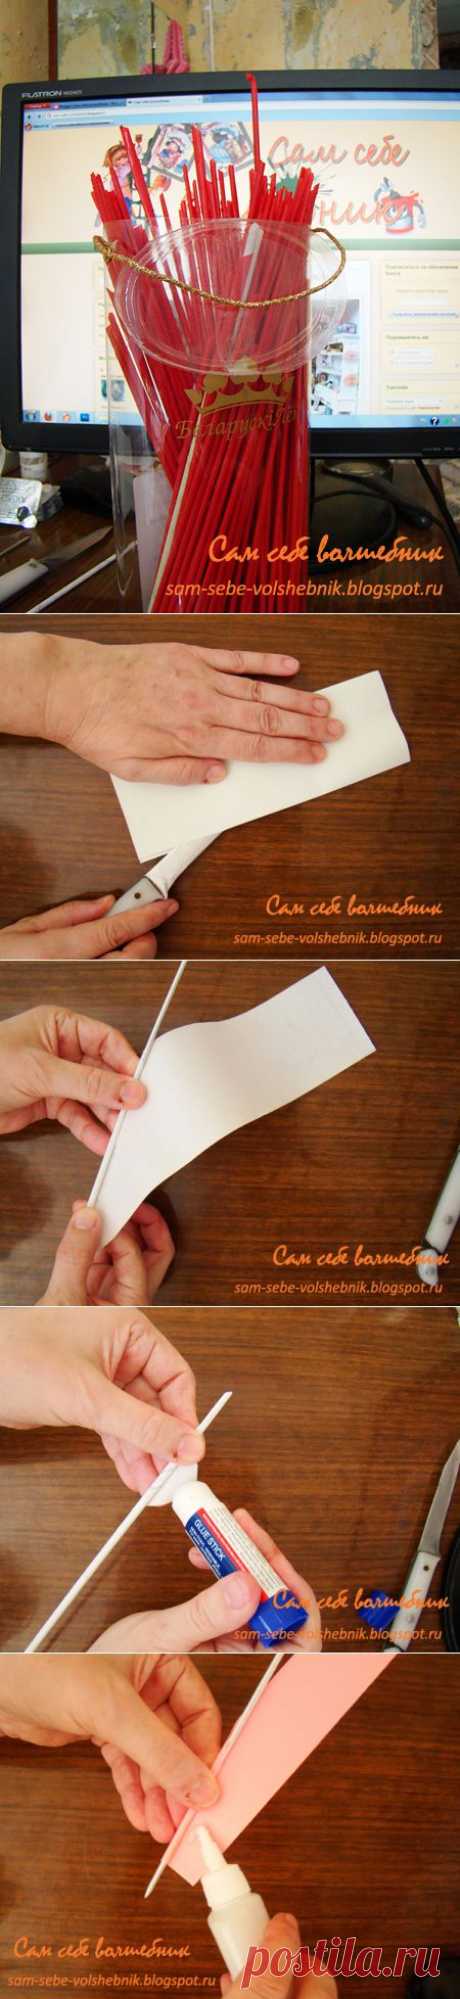 Как сделать трубочки для плетения из бумаги